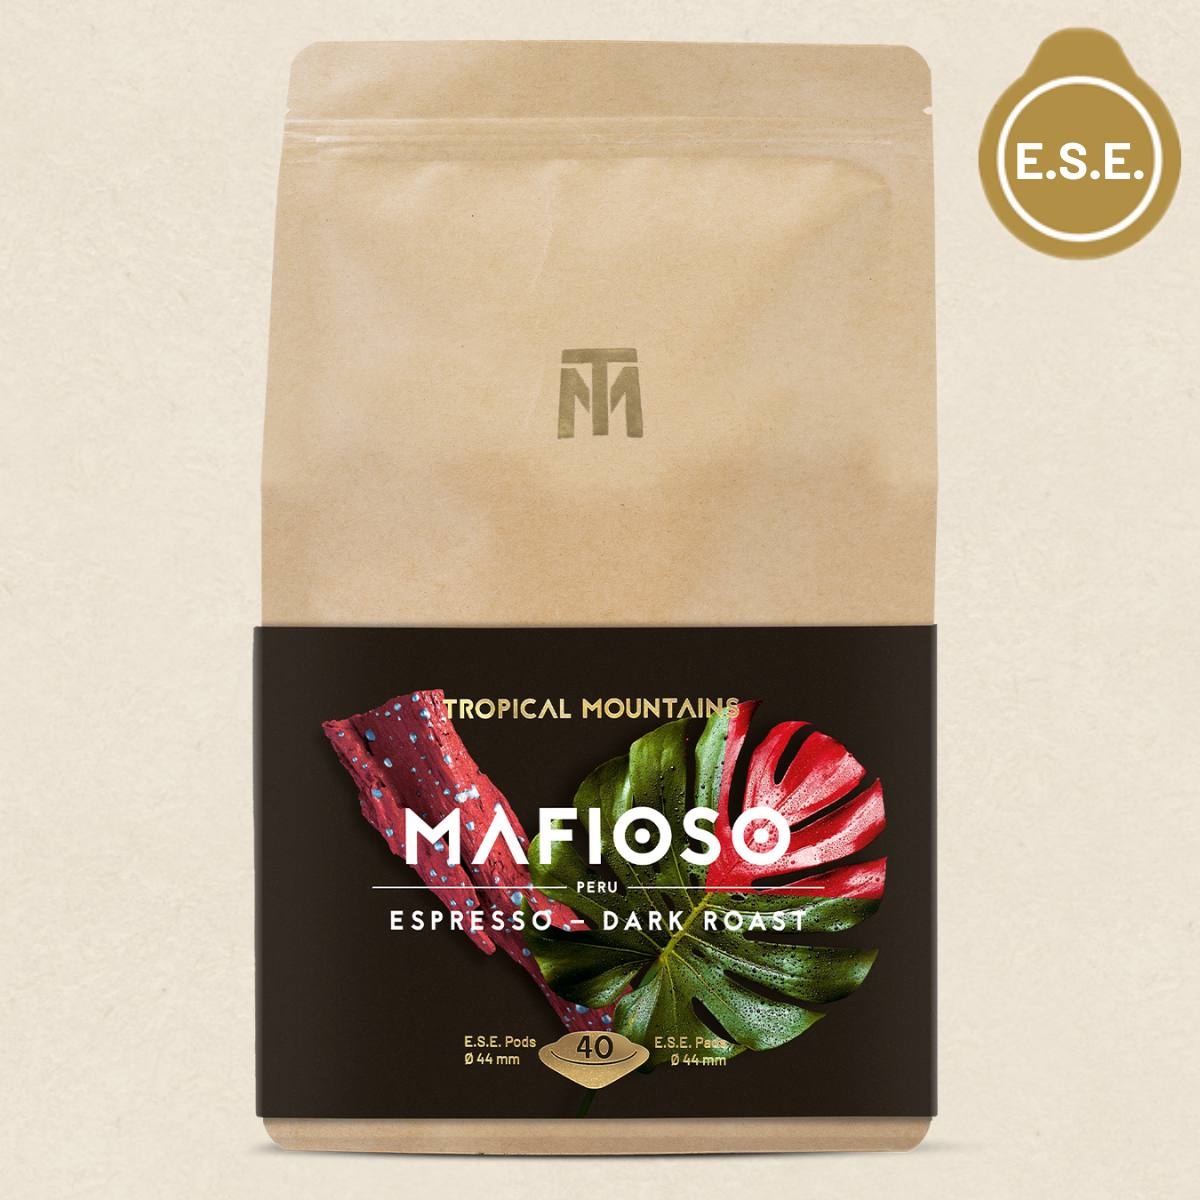 MAFIOSO Espresso Organic Fair Trade E.S.E. Pads